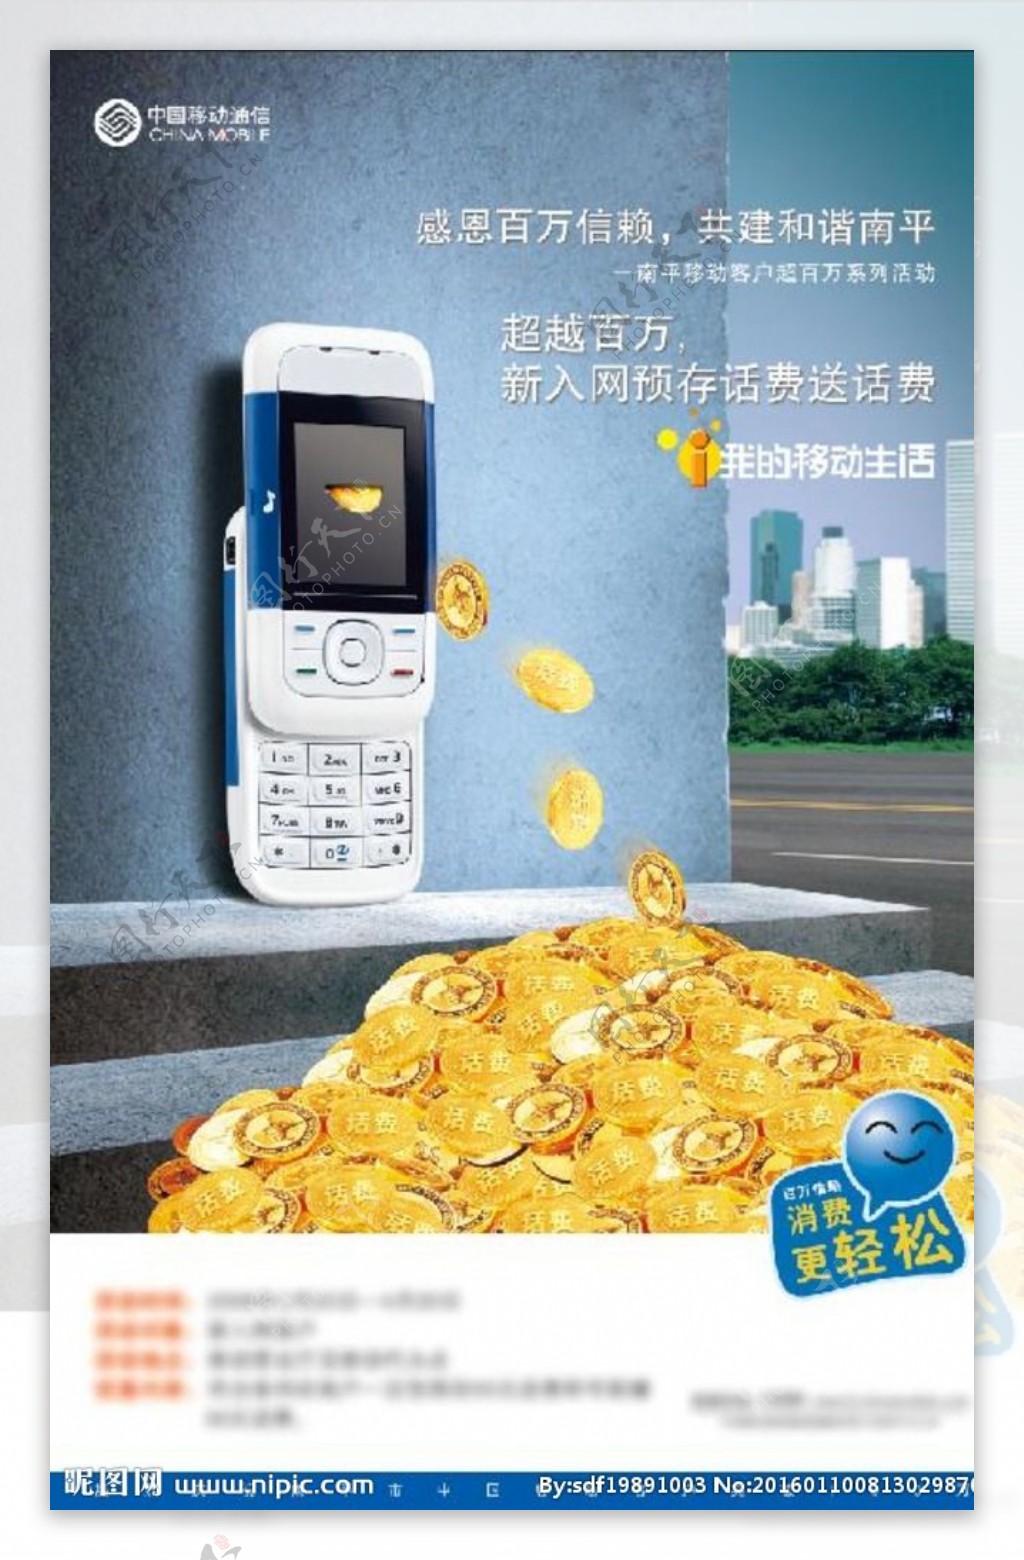 中国移动手机宣传海报